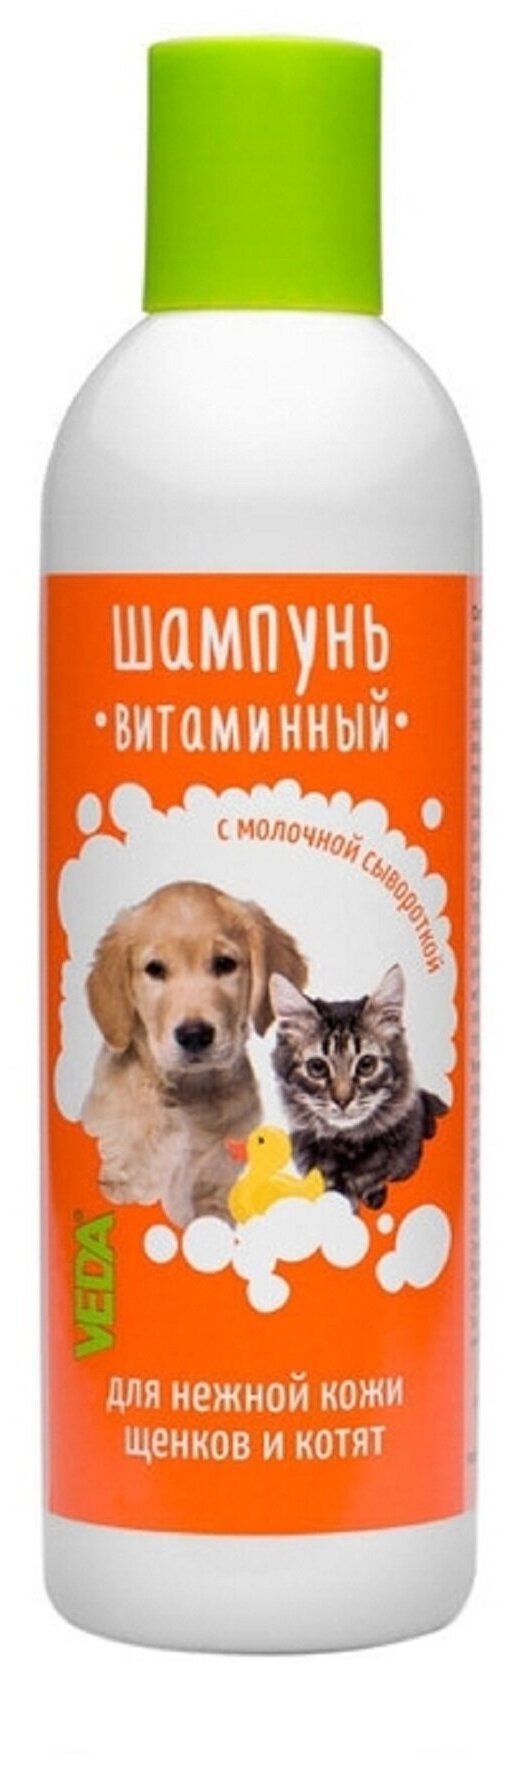 Шампунь Витаминный для щенков и котят 220 мл